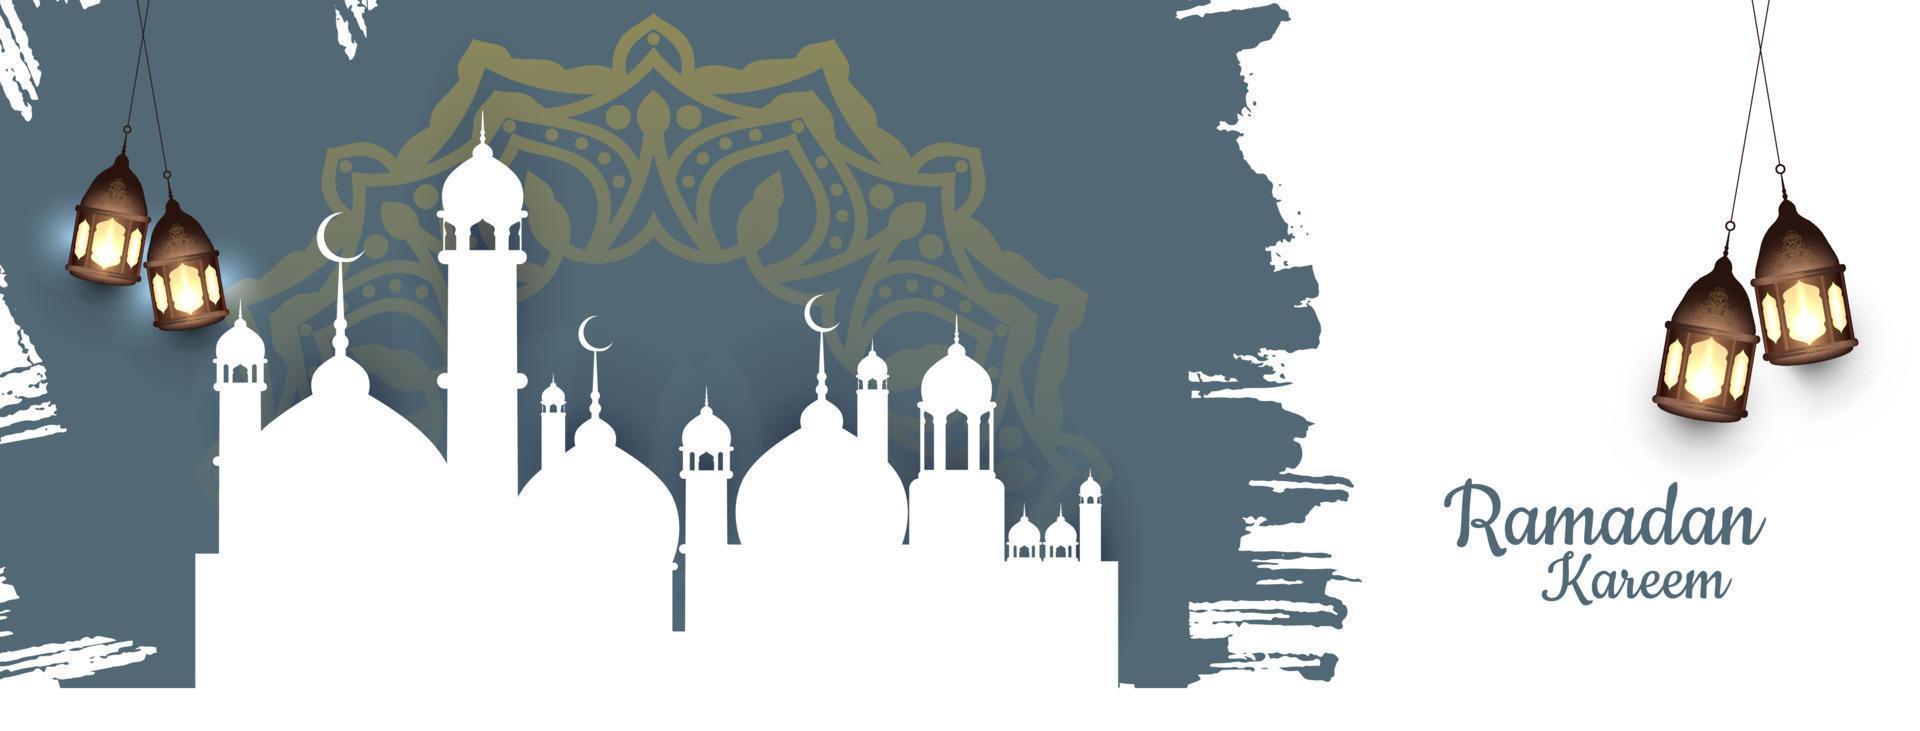 banner de saludo del festival islámico ramadan kareem con mezquita vector